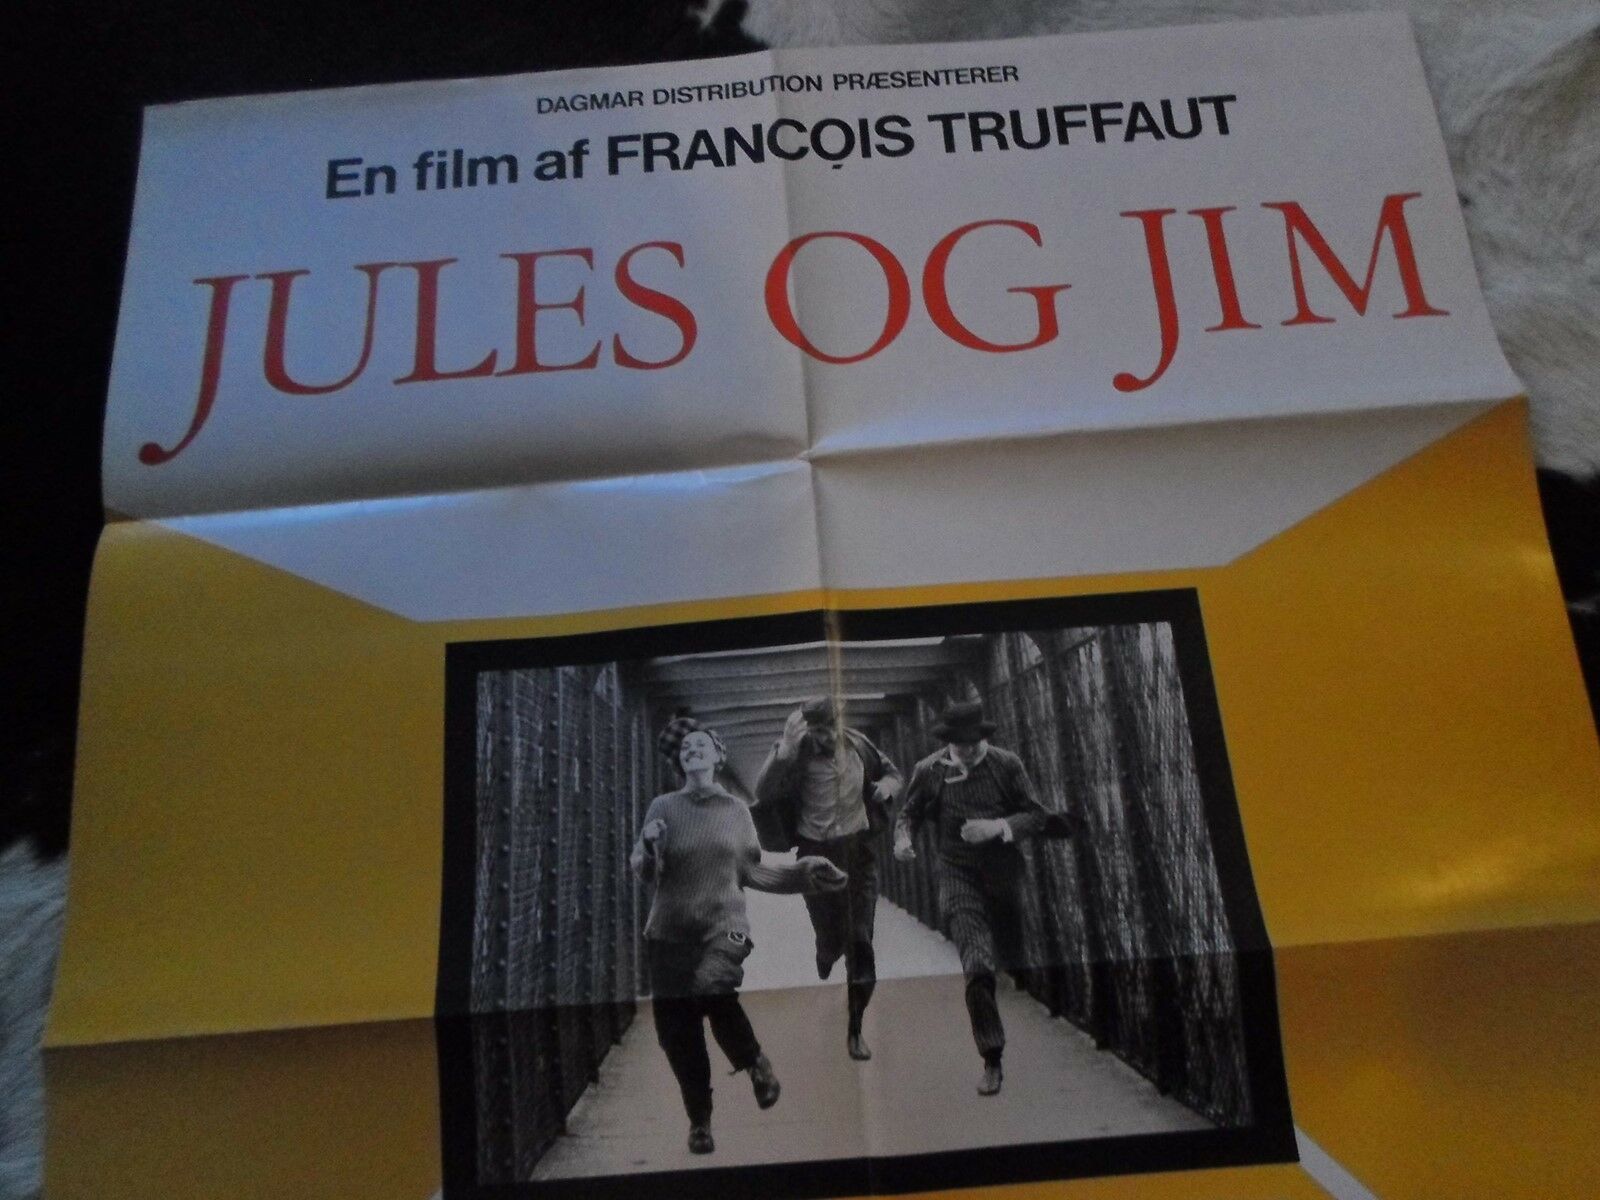 Filmplakat, Jules og Jim (Truffaut 1962), b: 60,5 h: 84,5